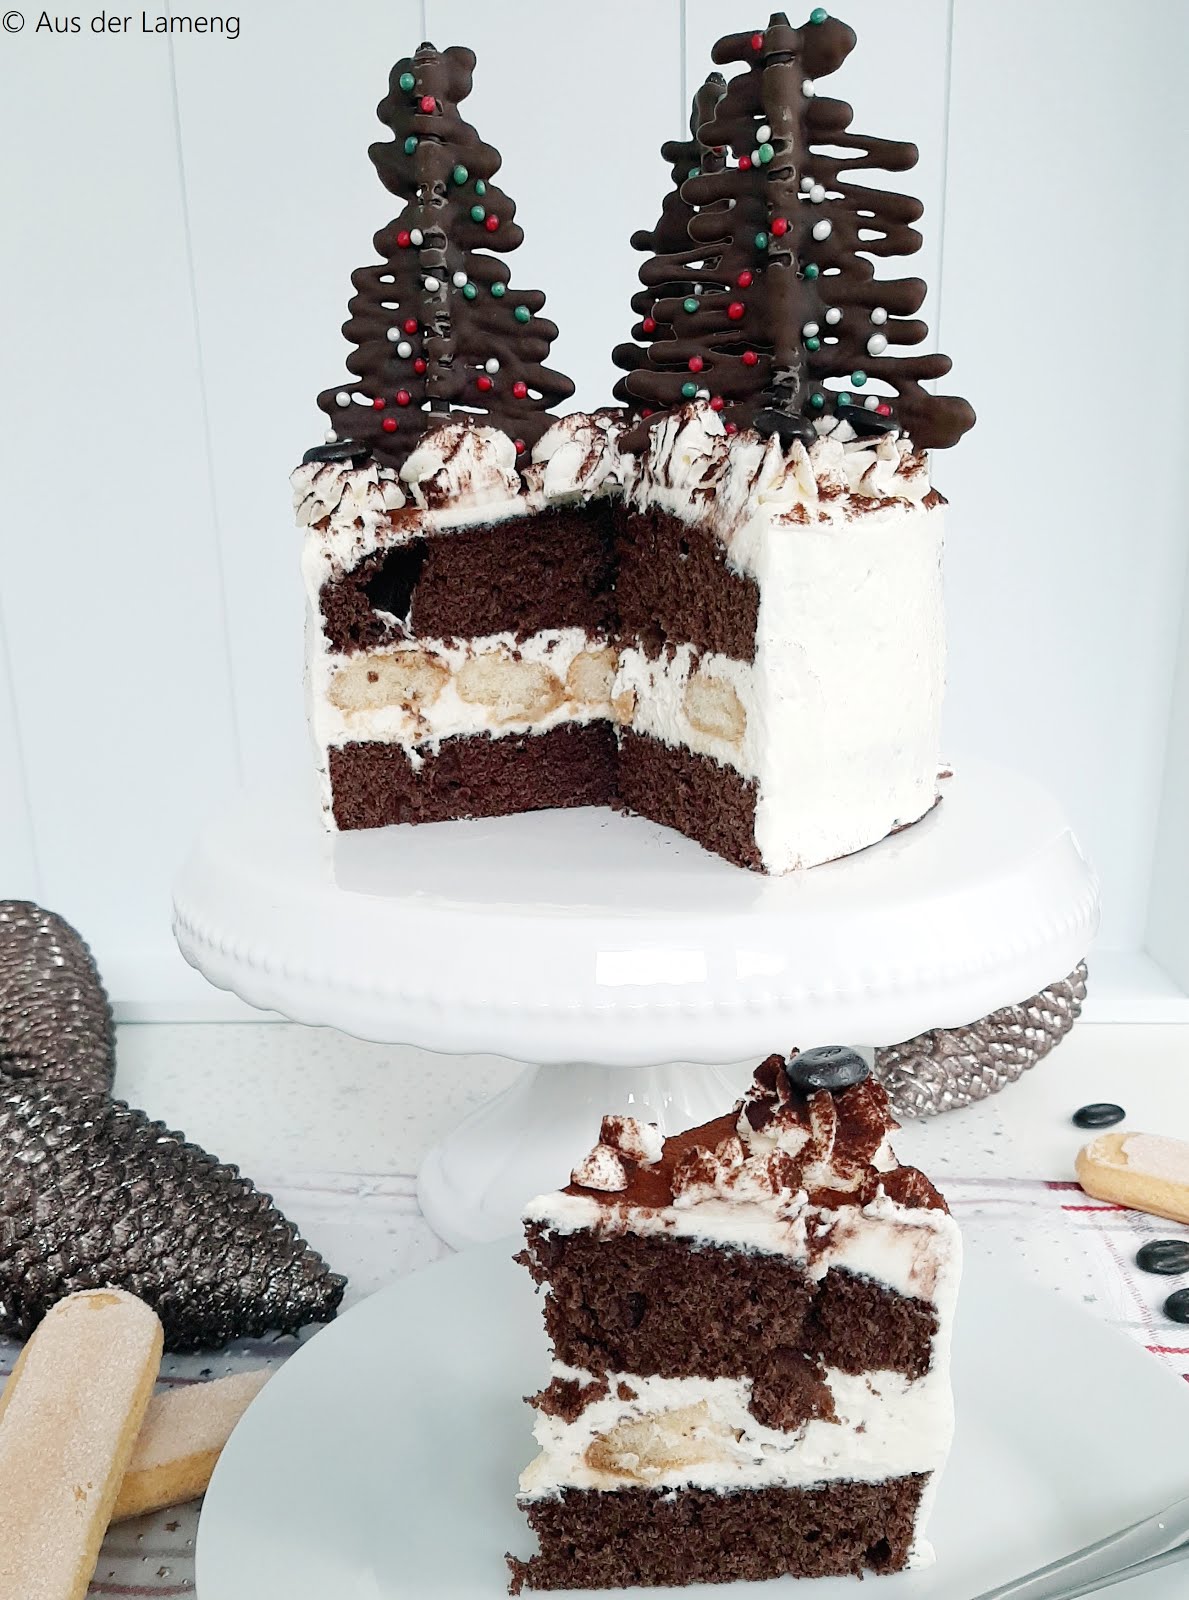 Weihnachtliche Tiramisu-Torte - Rezept von Aus der Lameng | SCCC 2019: Türchen Nr. 20 